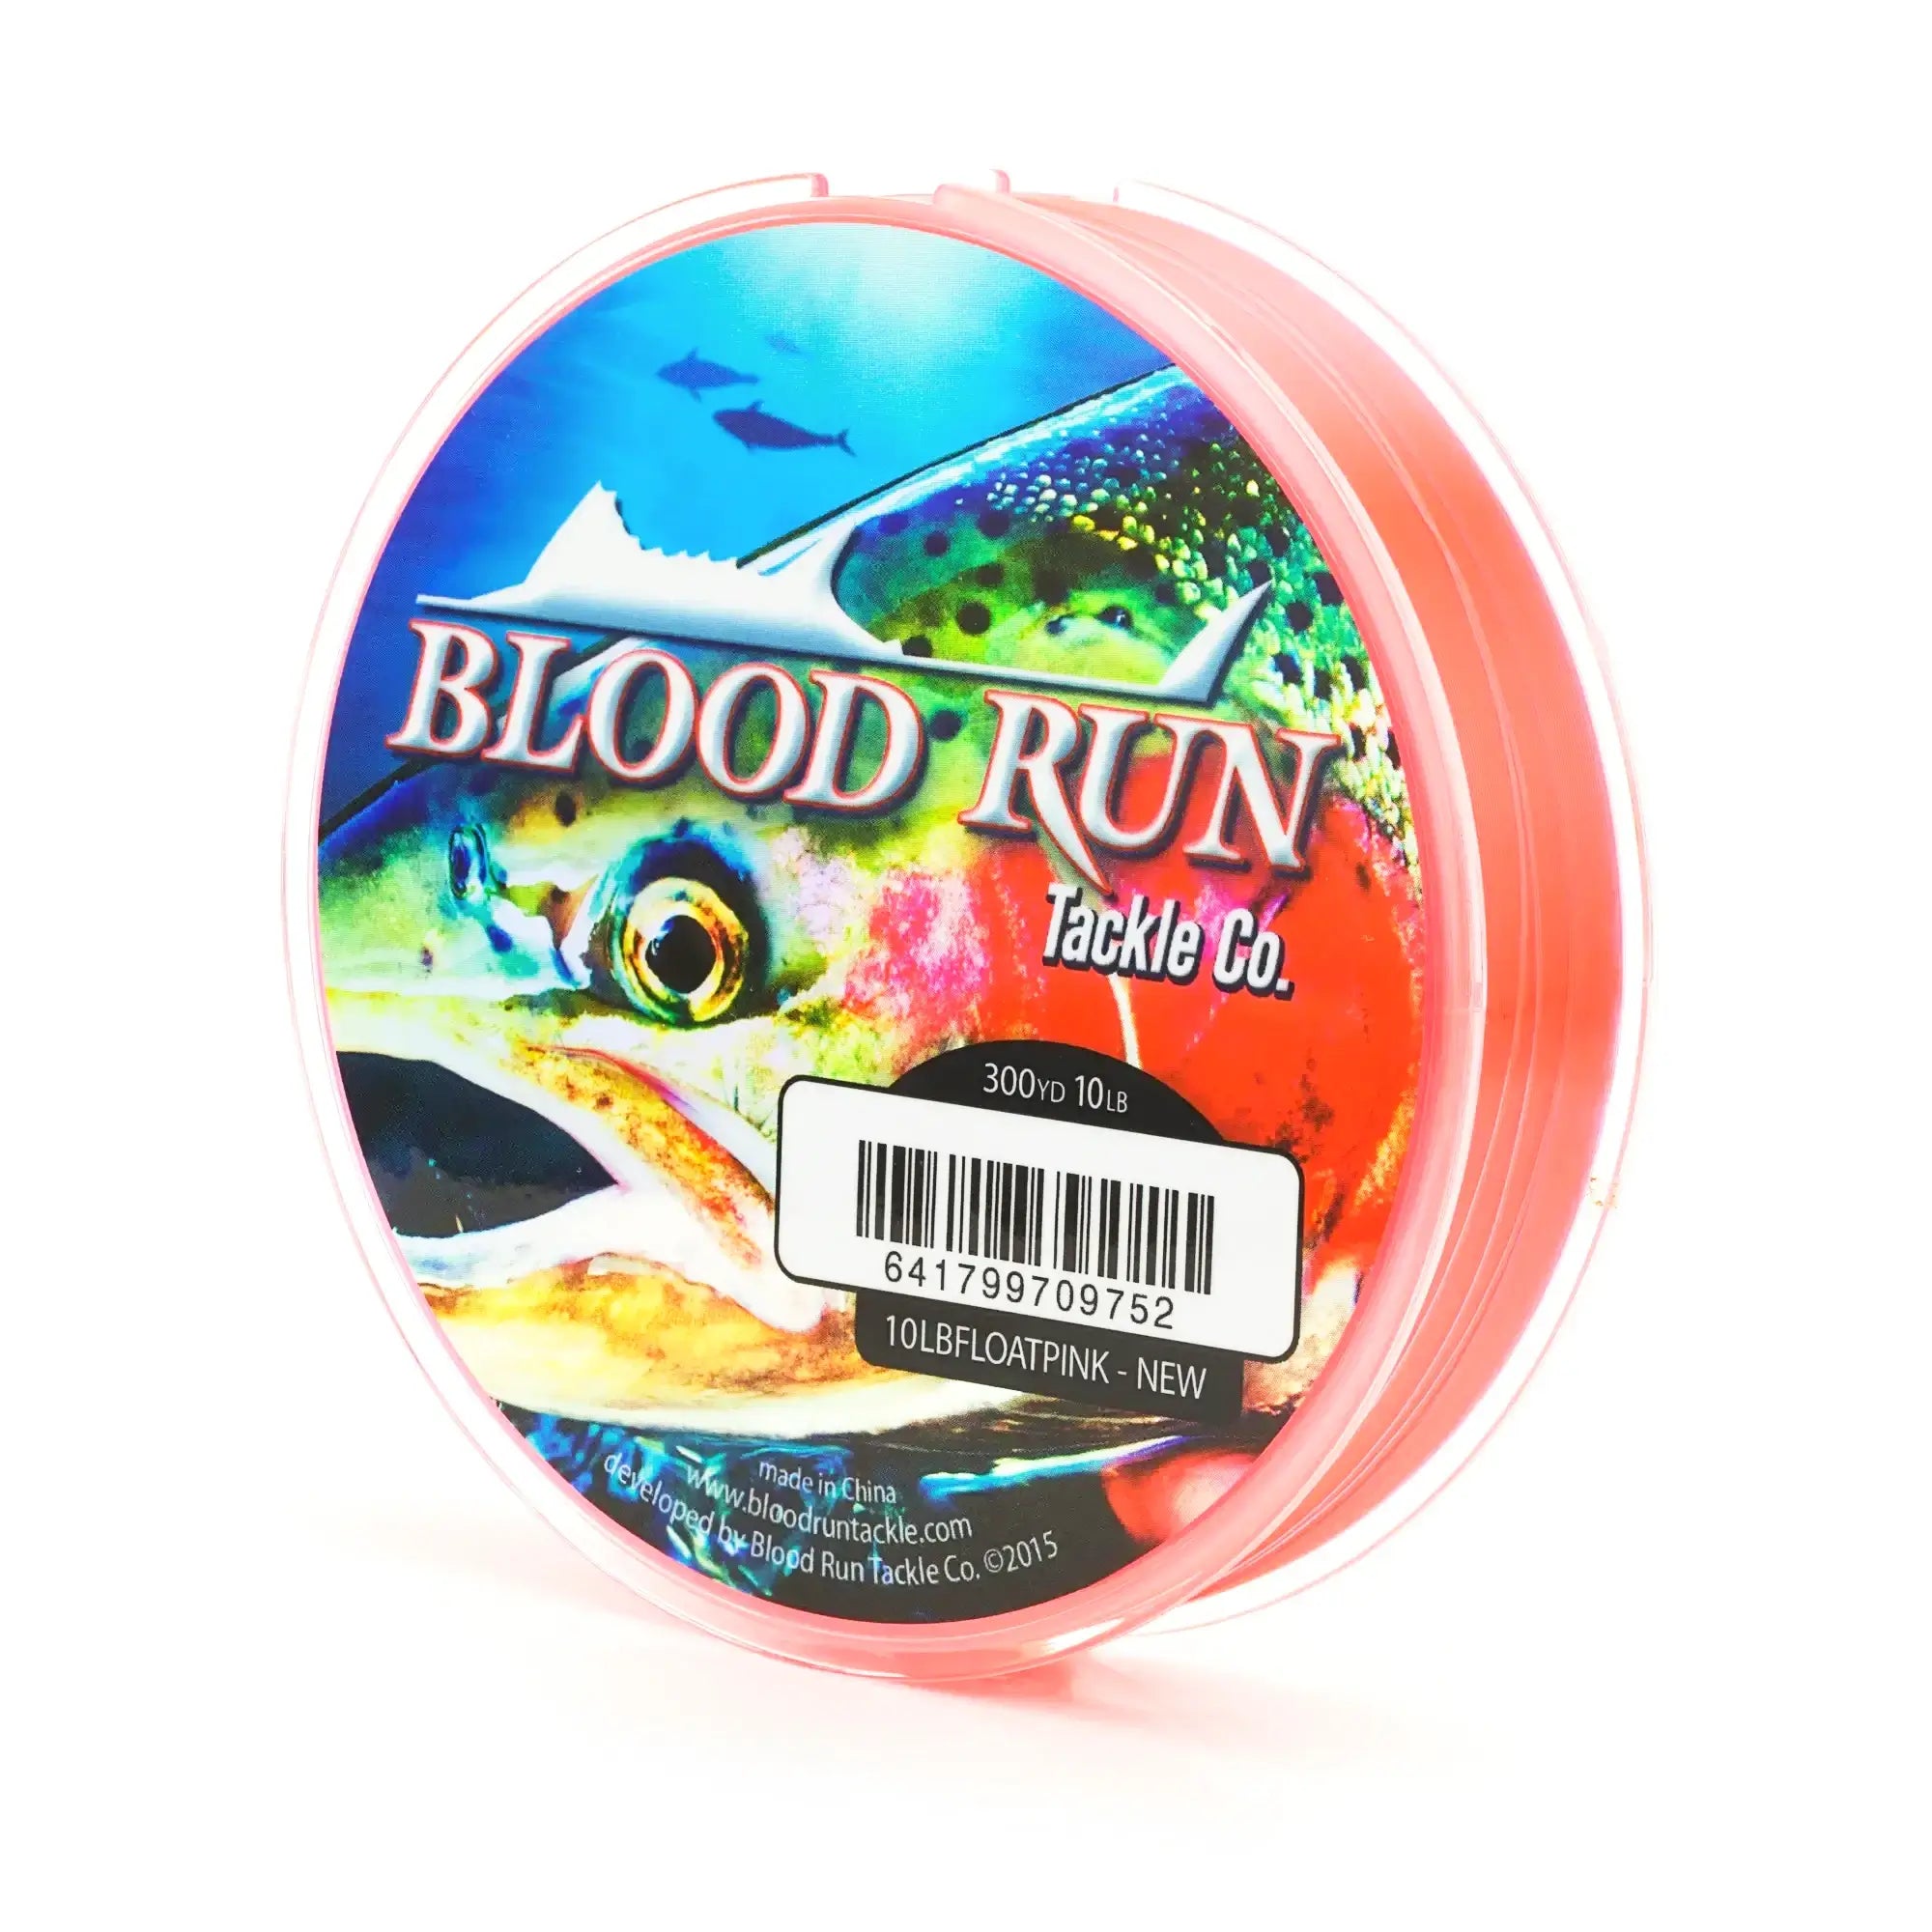 https://bloodrunfishing.com/cdn/shop/products/10LBFLOATPINK.webp?v=1651086582